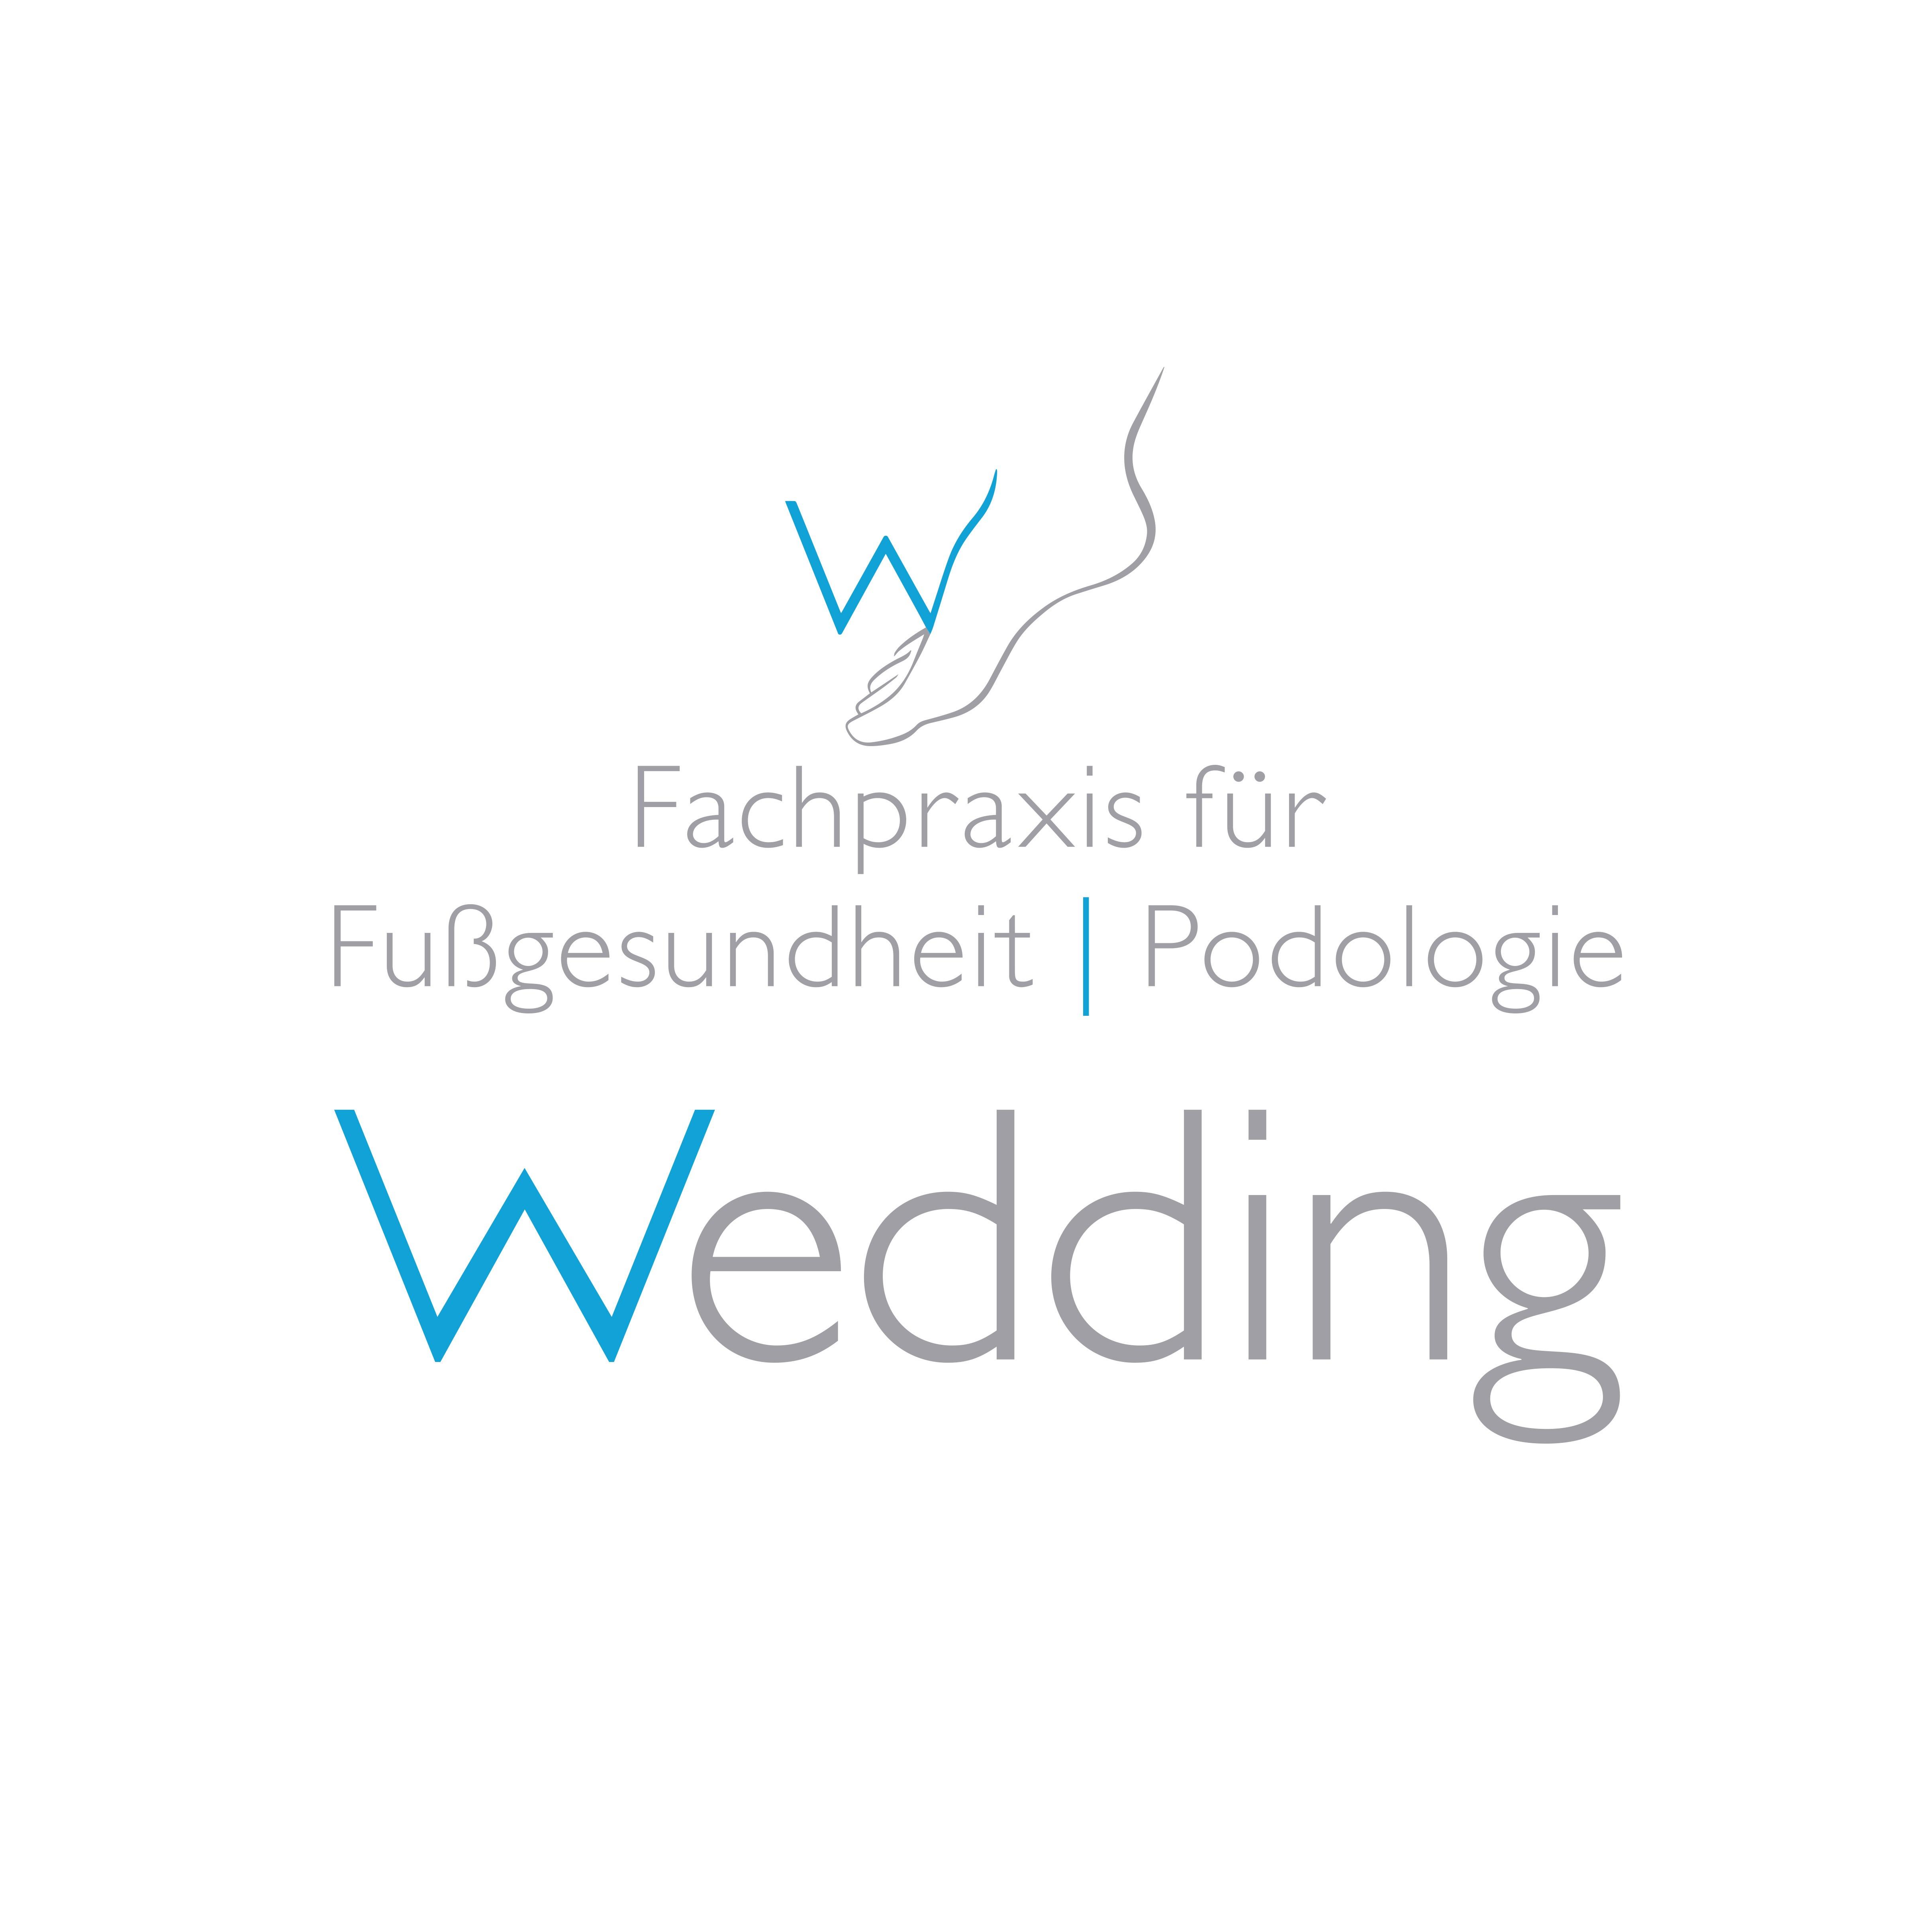 Fachpraxis für Fußgesundheit und Podologie Wedding